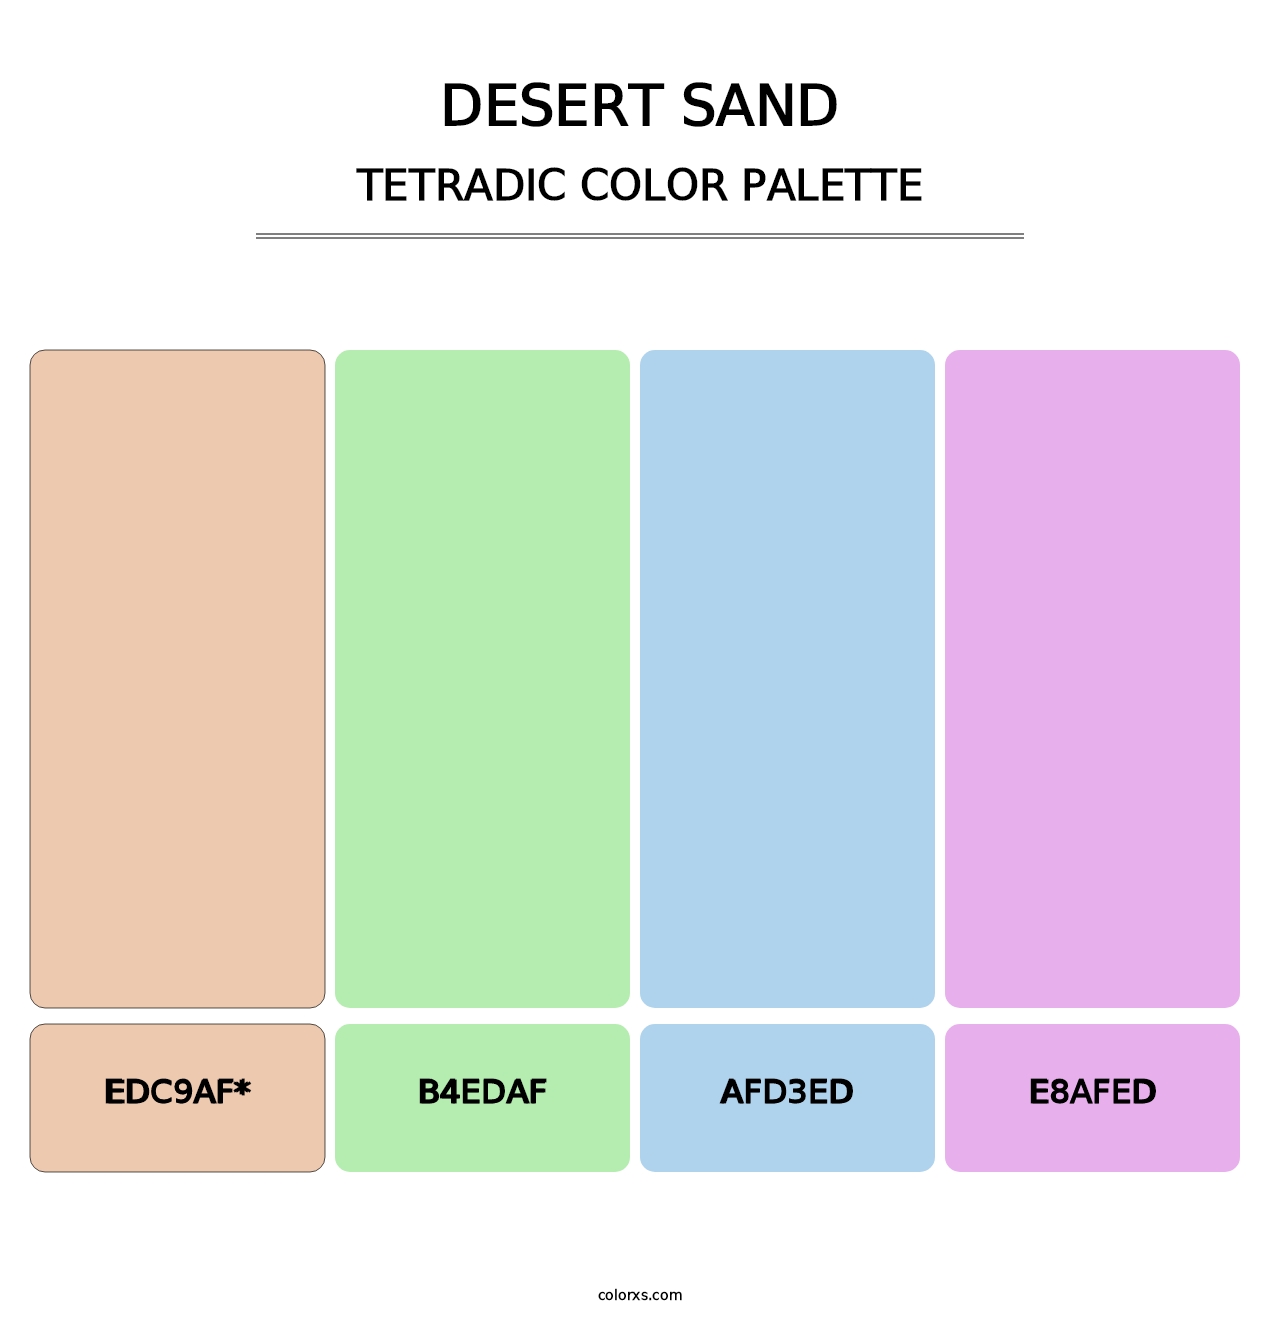 Desert Sand - Tetradic Color Palette